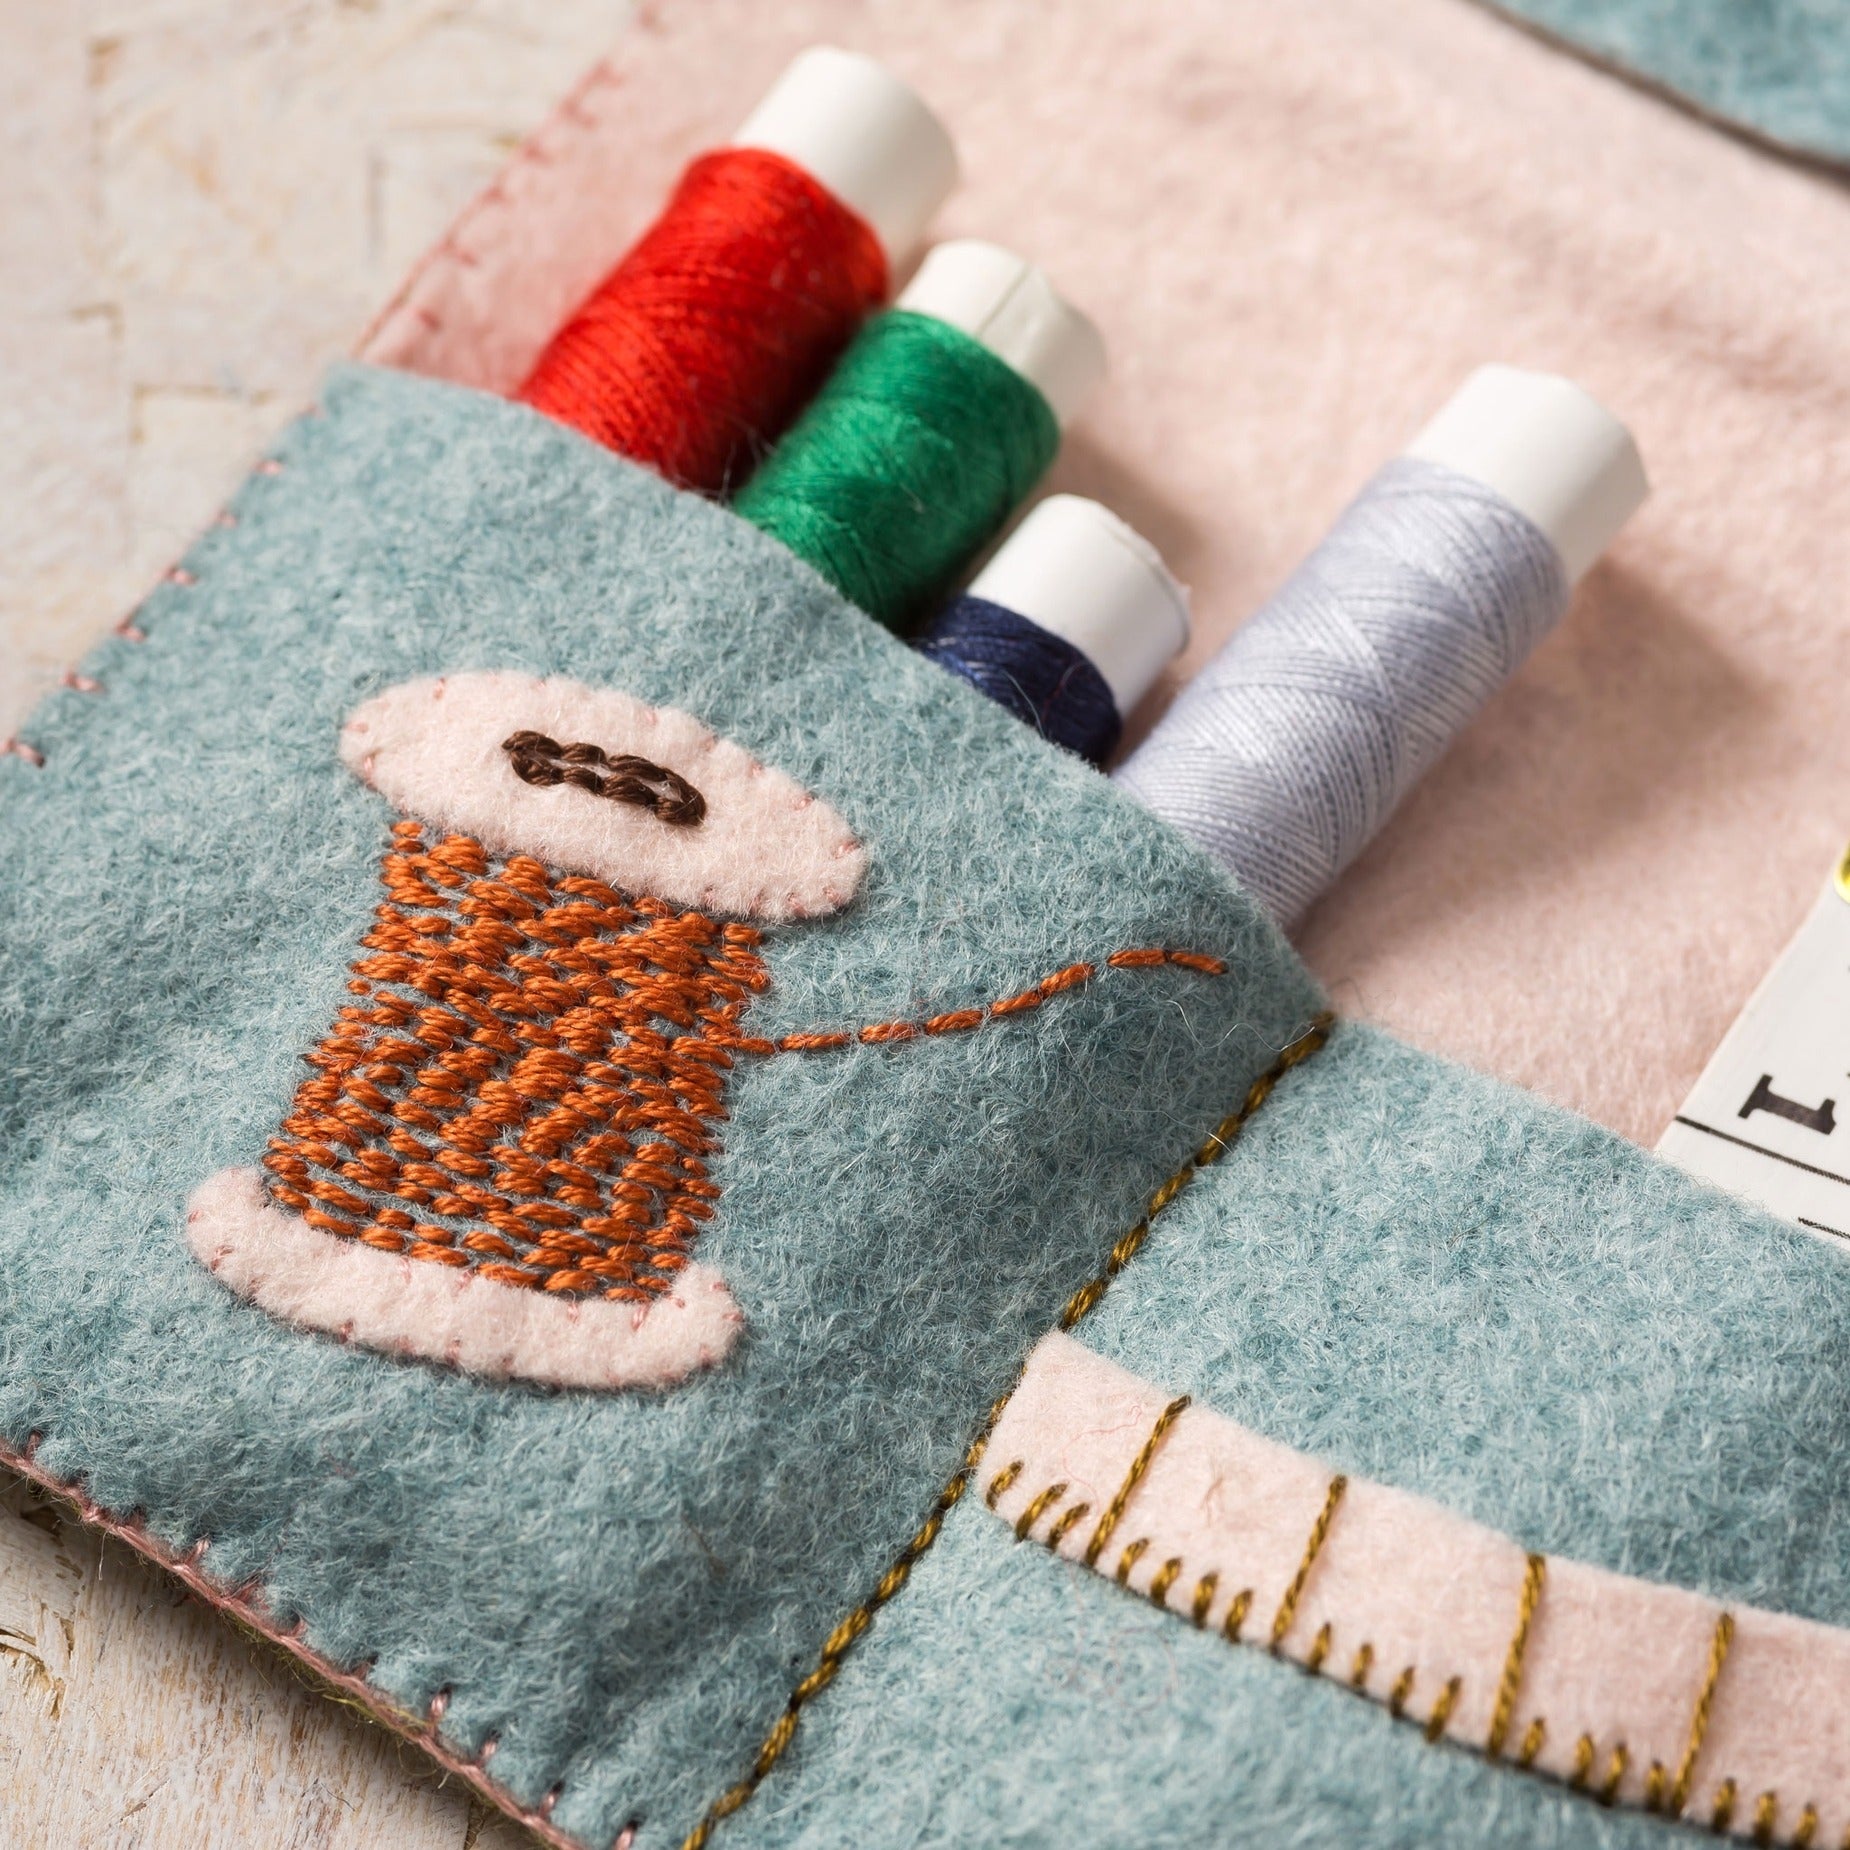 Wool Felt Stitching Kit - Cottage Mouse Family.